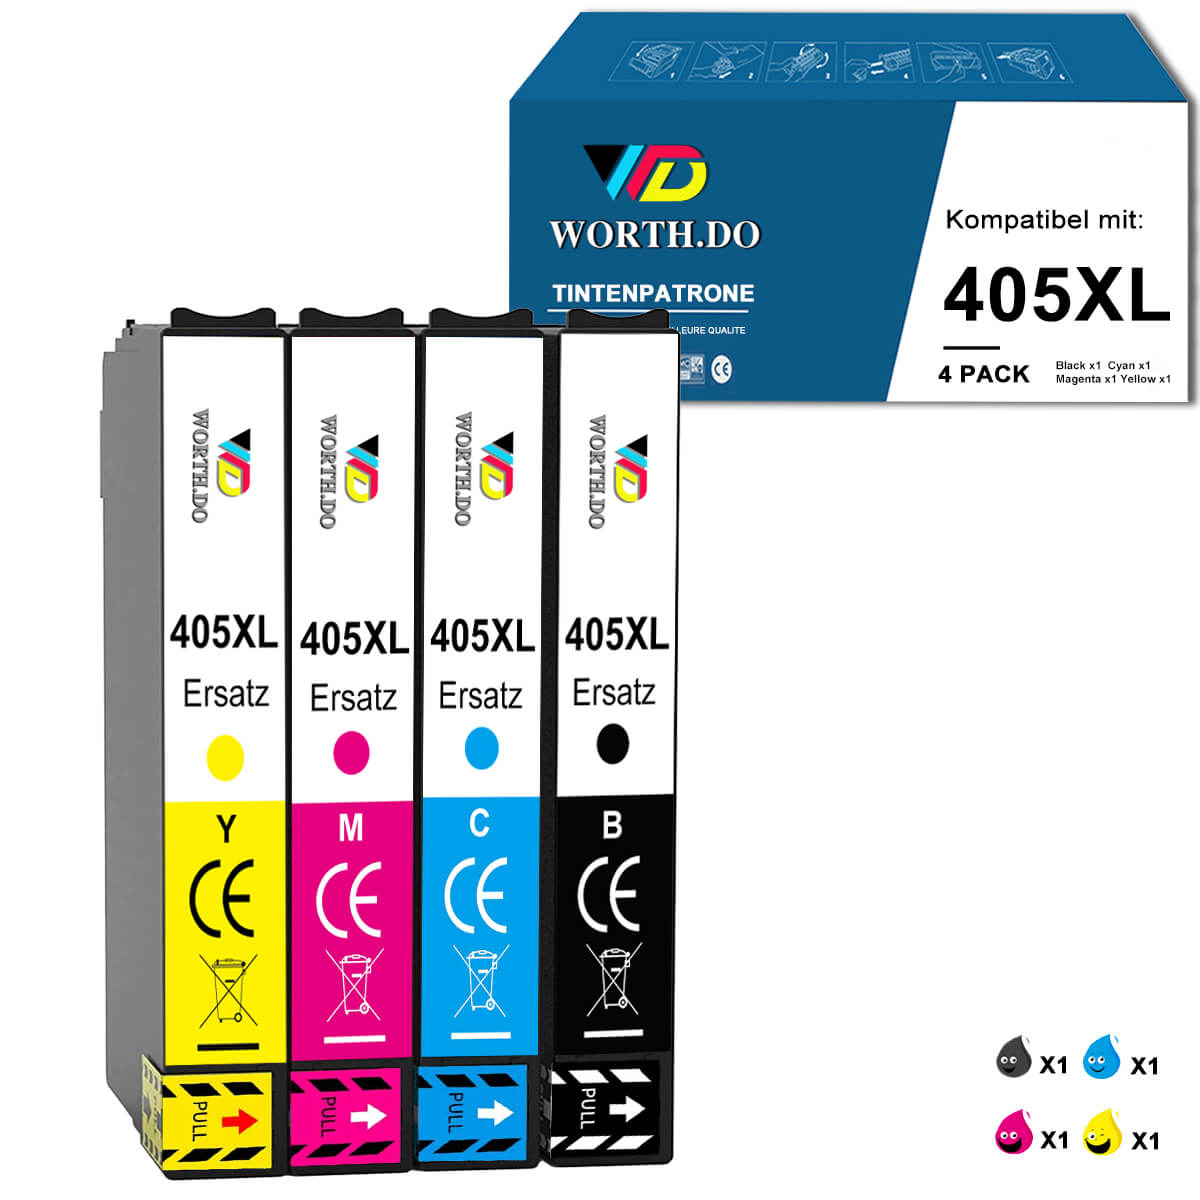 Tintenpatrone ersetzt Epson 405XL Gelb (1 Pack)